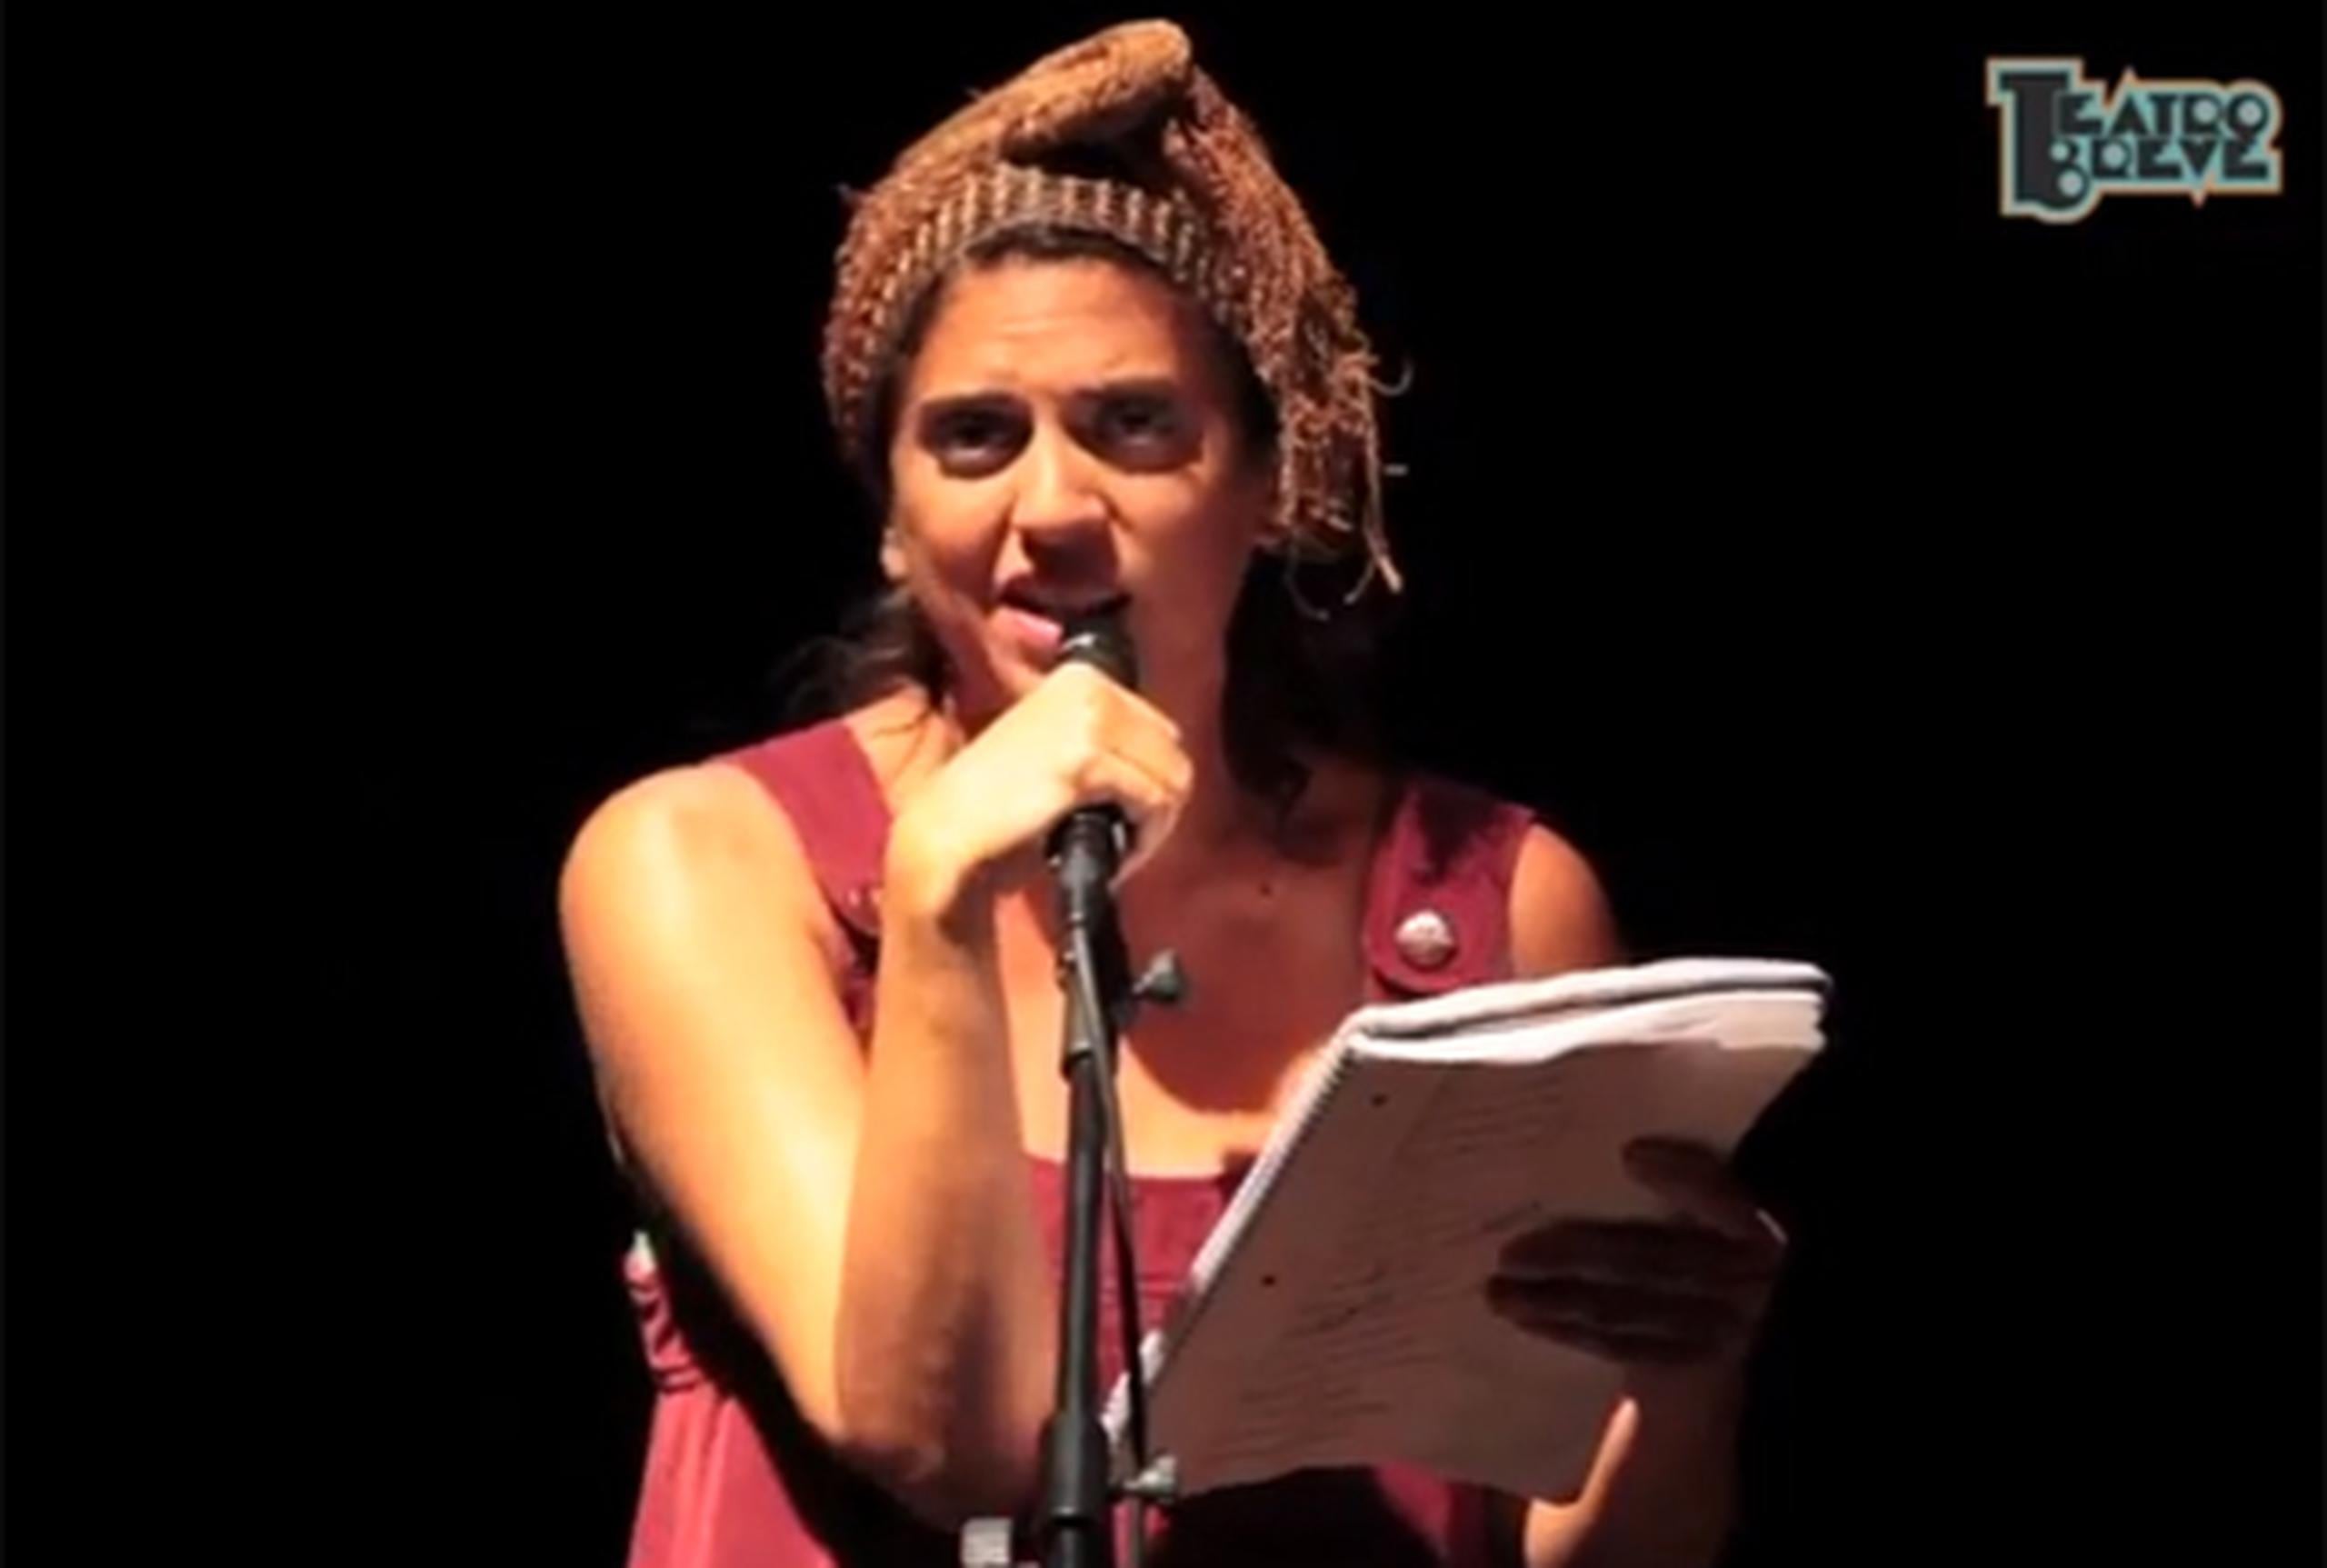 “Guanina”, personaje que forma parte de los espectáculos del colectivo Teatro Breve, presentó recientemente el poema “Rebound y Crush”.